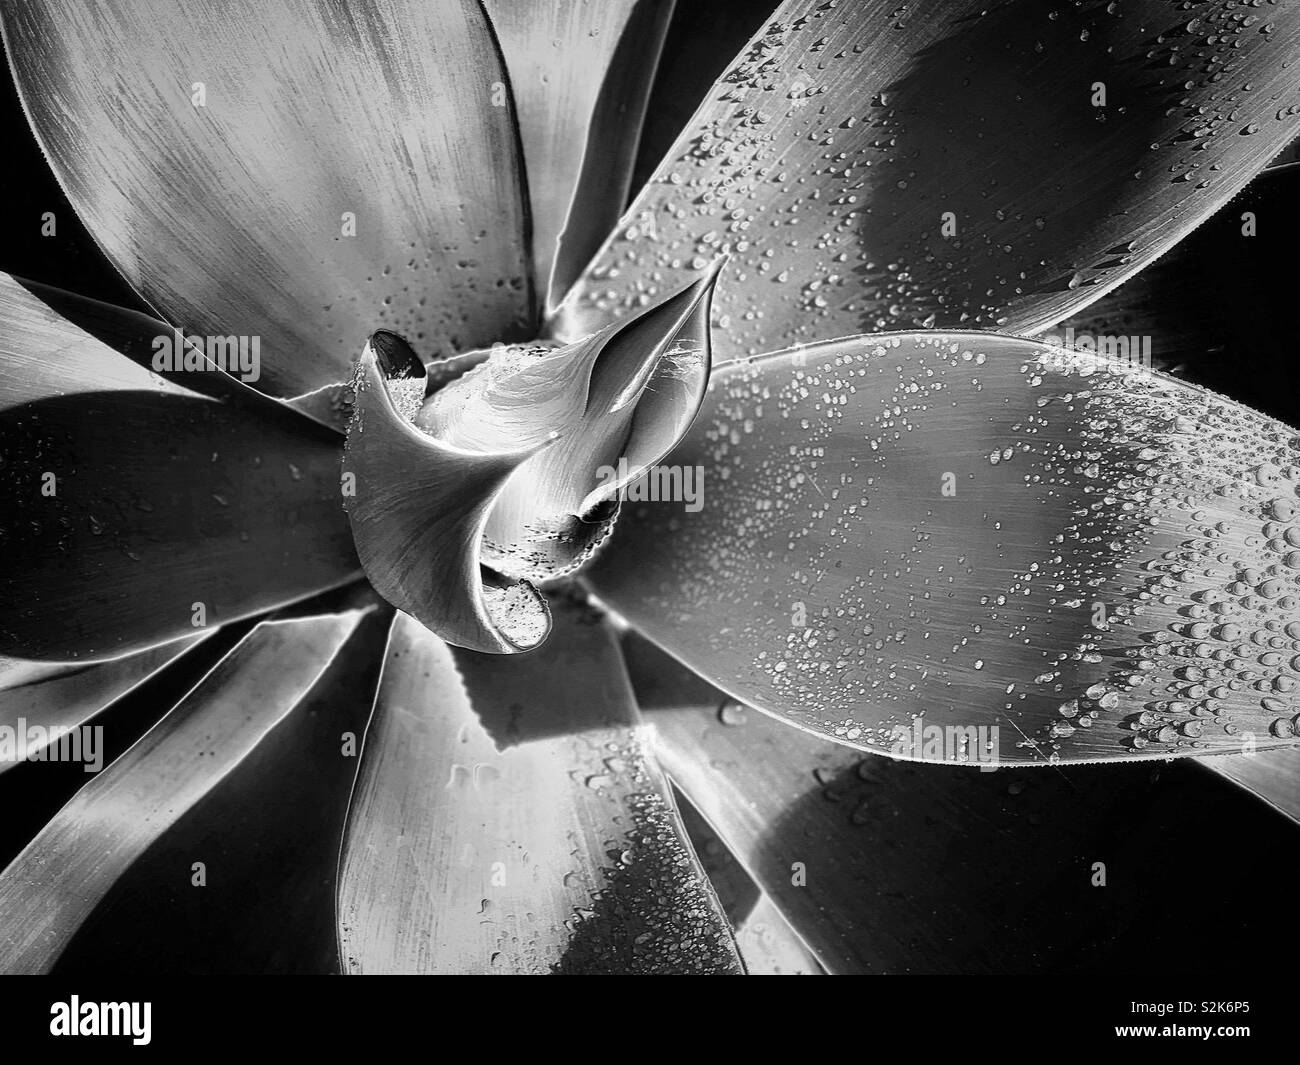 龍舌蘭科之翡翠盤 / Agave attenuata Salm-Dyck in black and white Stock Photo